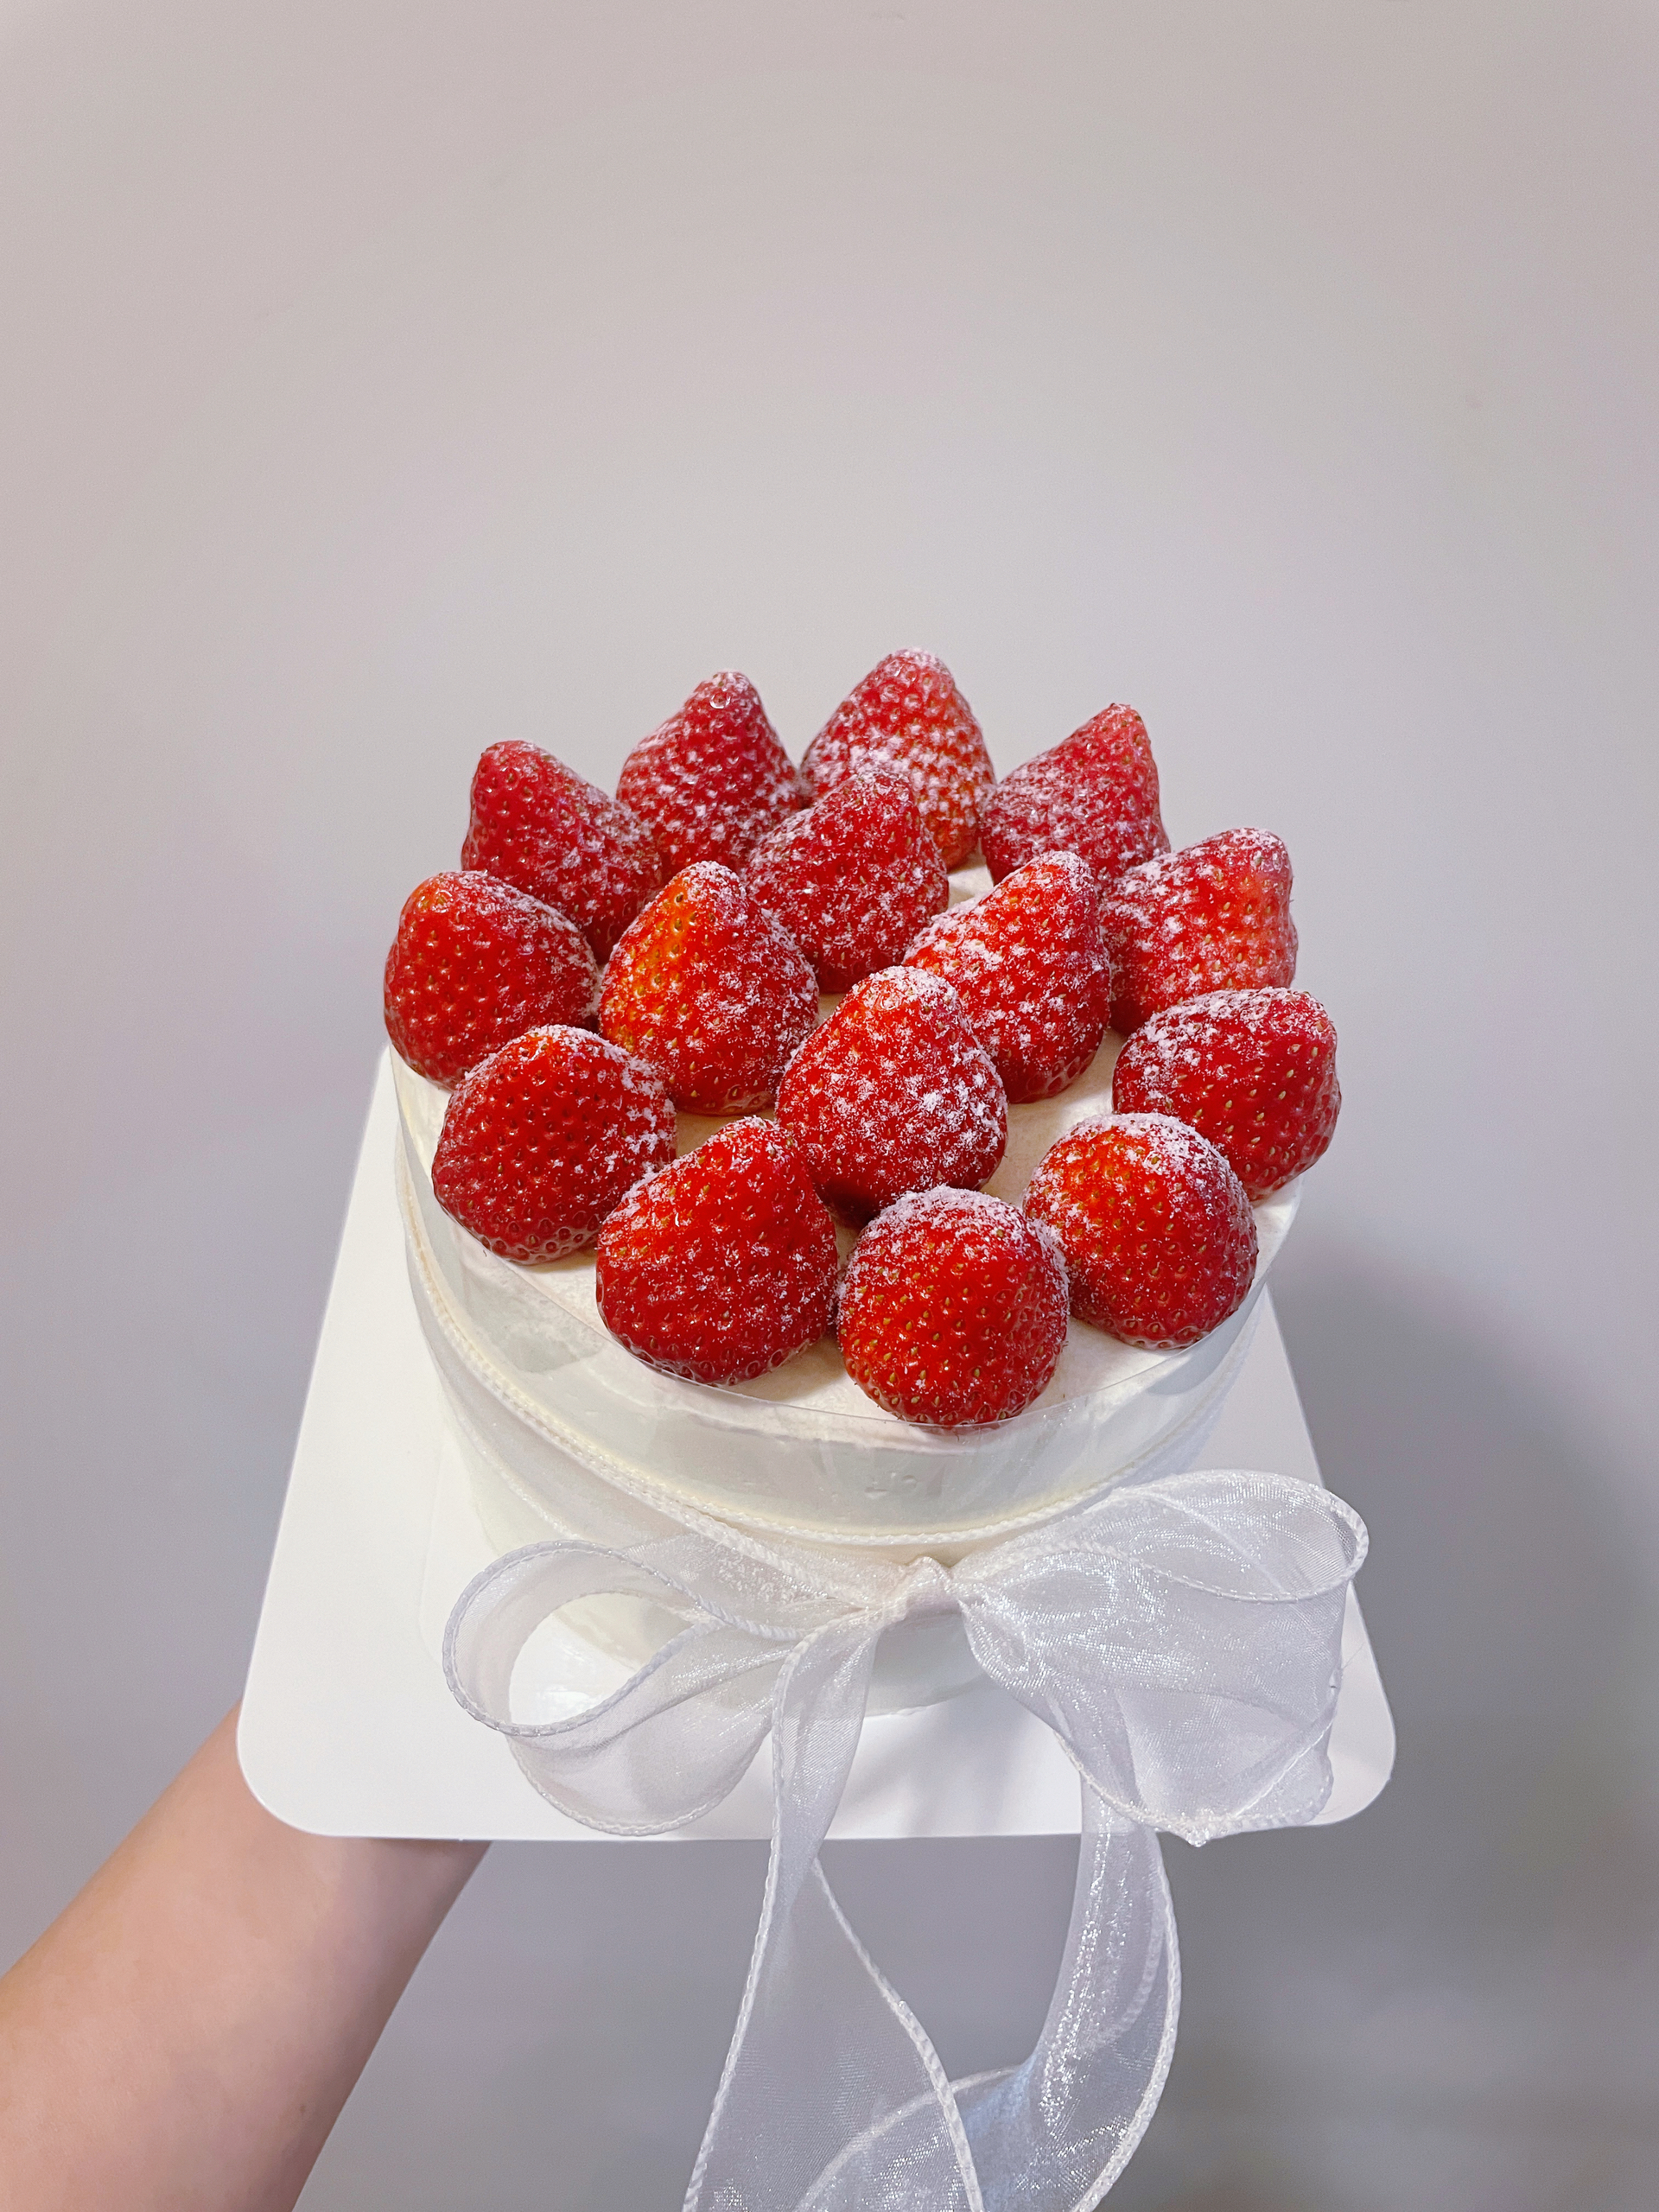 【全网最全合集】搬运🍓漂亮的草莓蛋糕~草莓季装饰灵感图